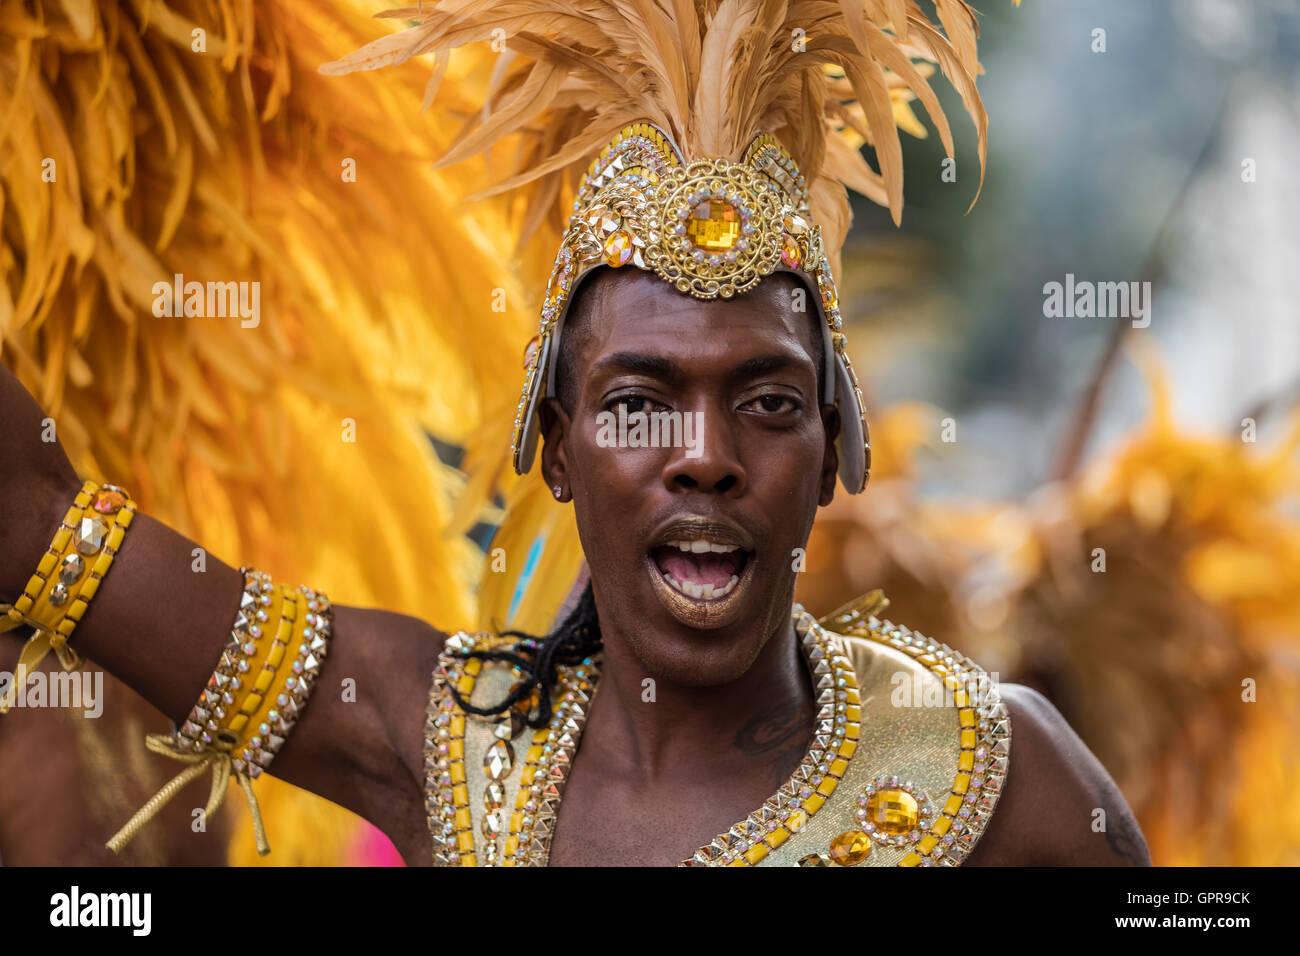 Homme noir Afro Antillais en costume avec une coiffure de plumes jaunes au carnaval de Notting Hill dans l'ouest de Londres Banque D'Images